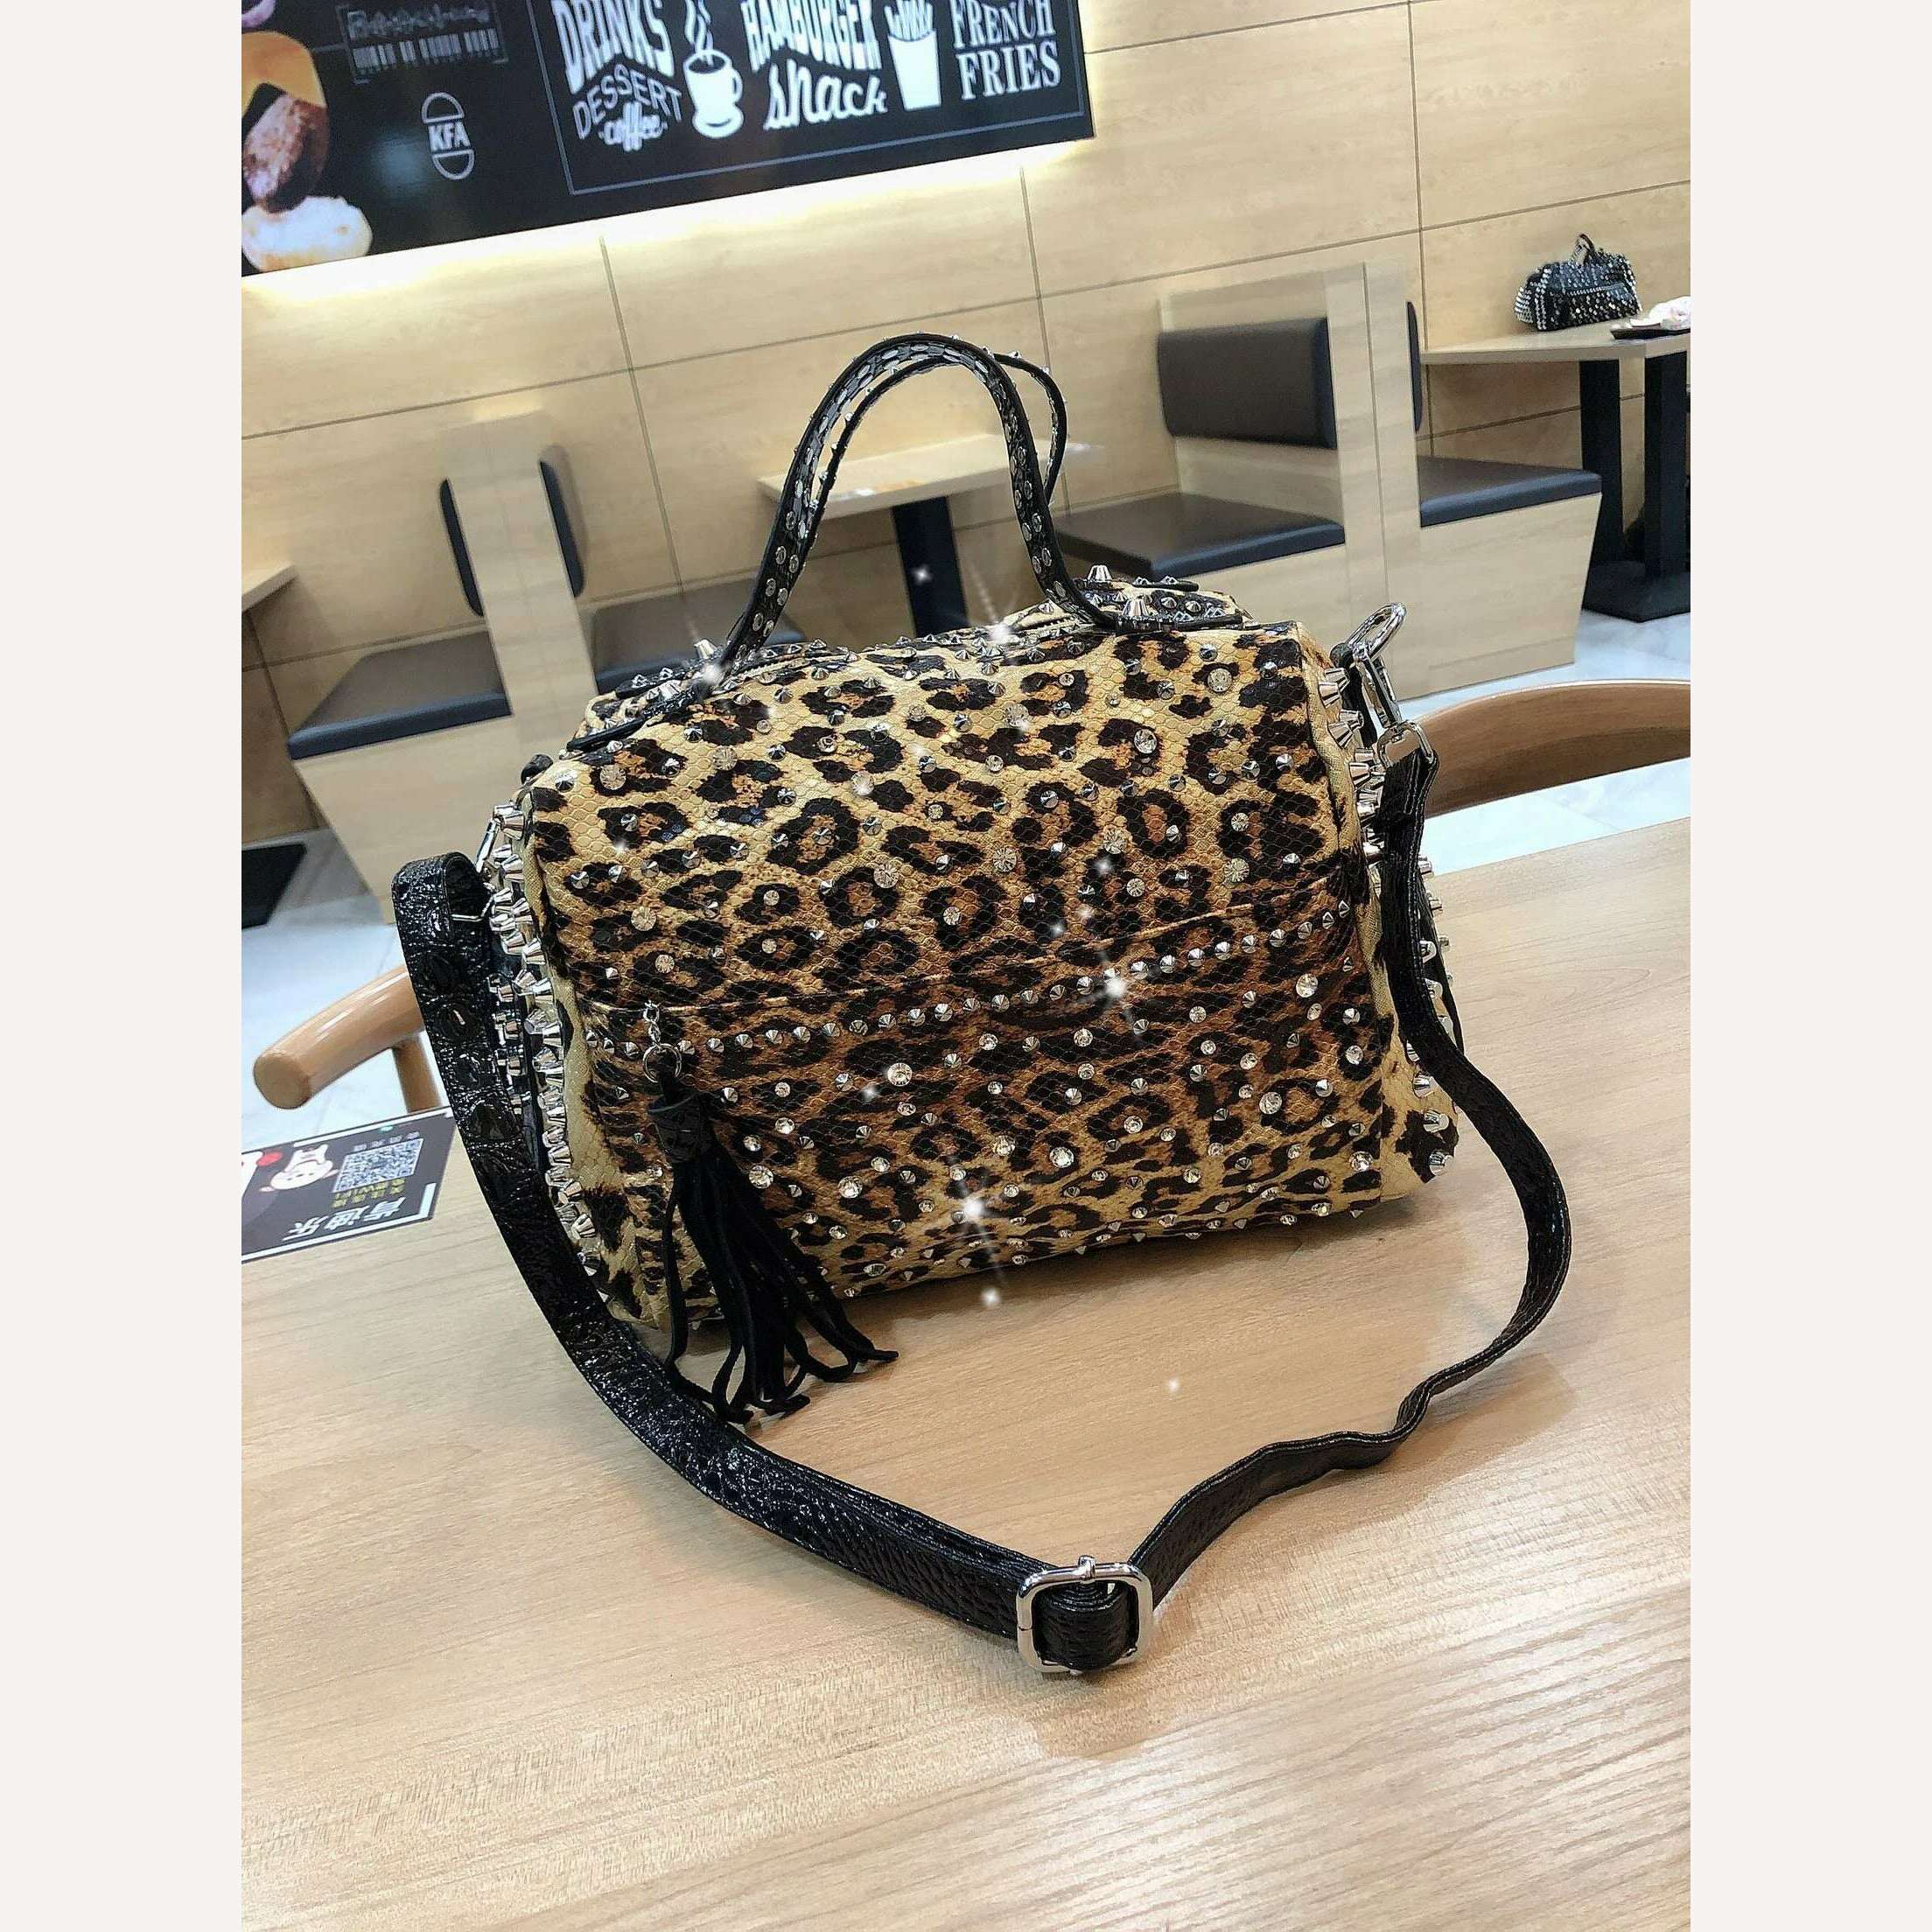 KIMLUD, New trend handbags personality fashion retro leopard rhinestone handbag rivet shoulder bag ladies casual handbag Messenger bag, KIMLUD Women's Clothes